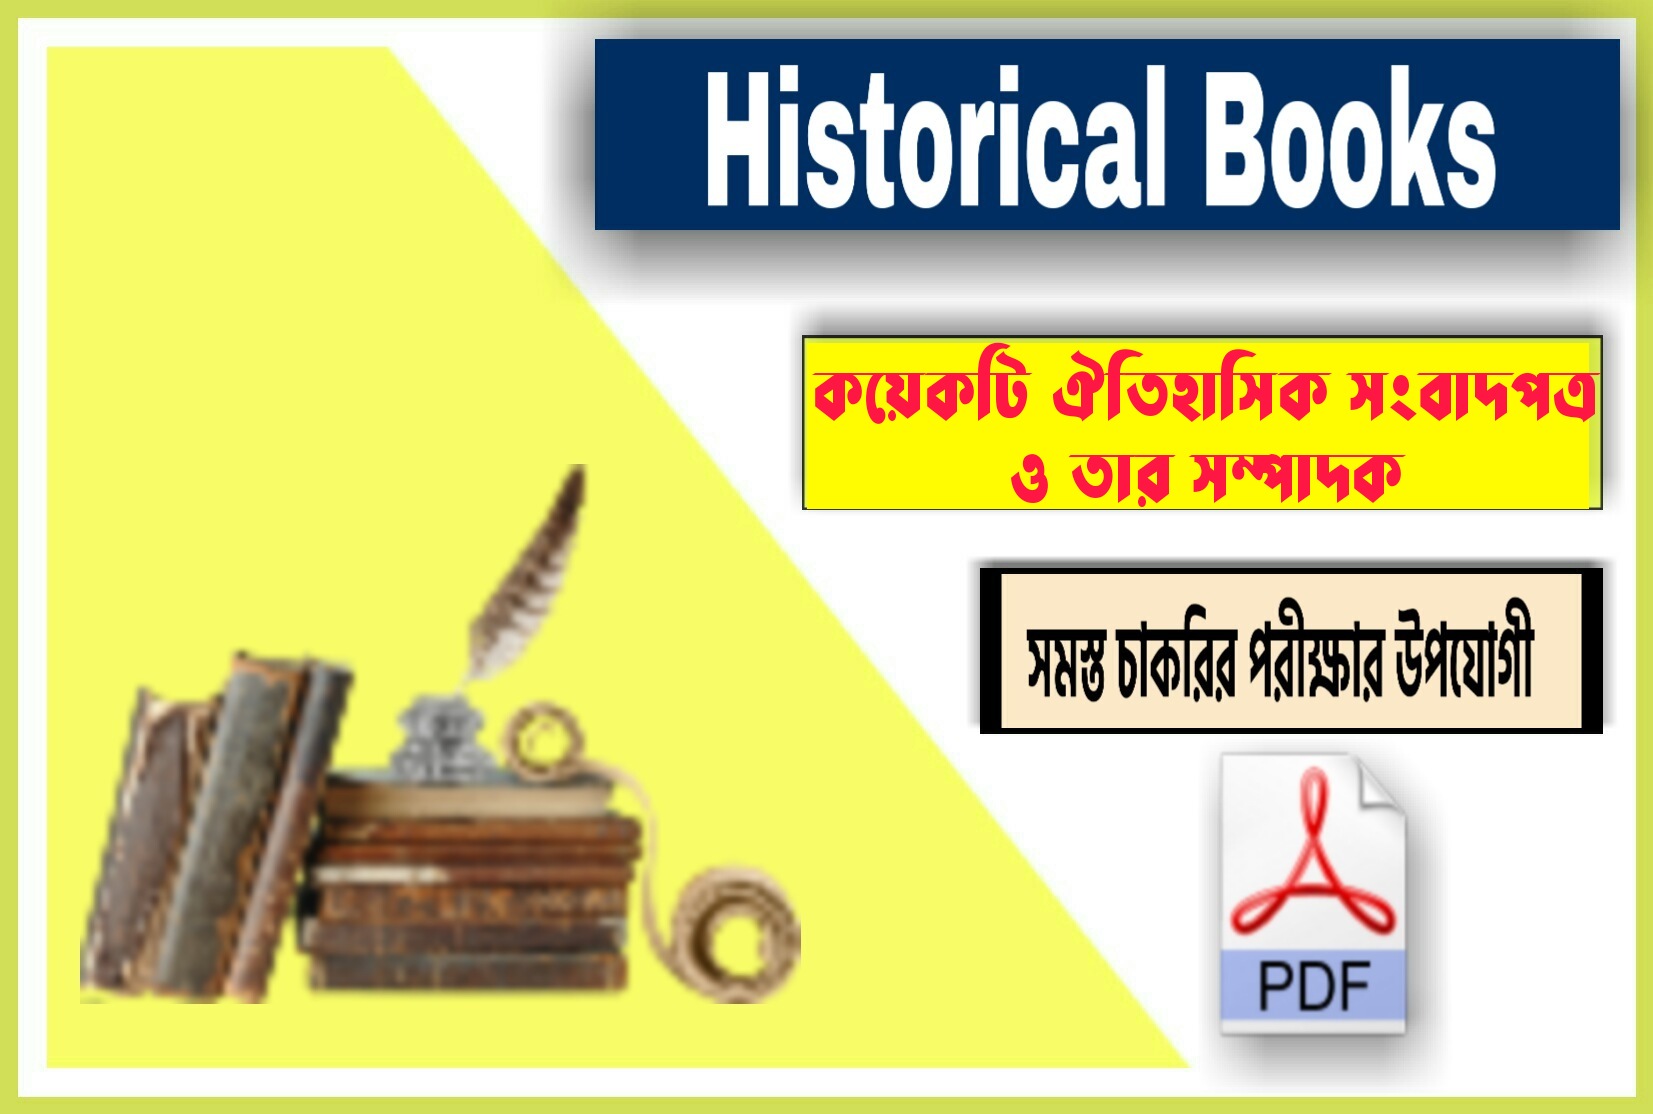 কয়েকটি ঐতিহাসিক সংবাদপত্র ও তার সম্পাদক || Historical Newspaper And Its Editor In Bengali pdf